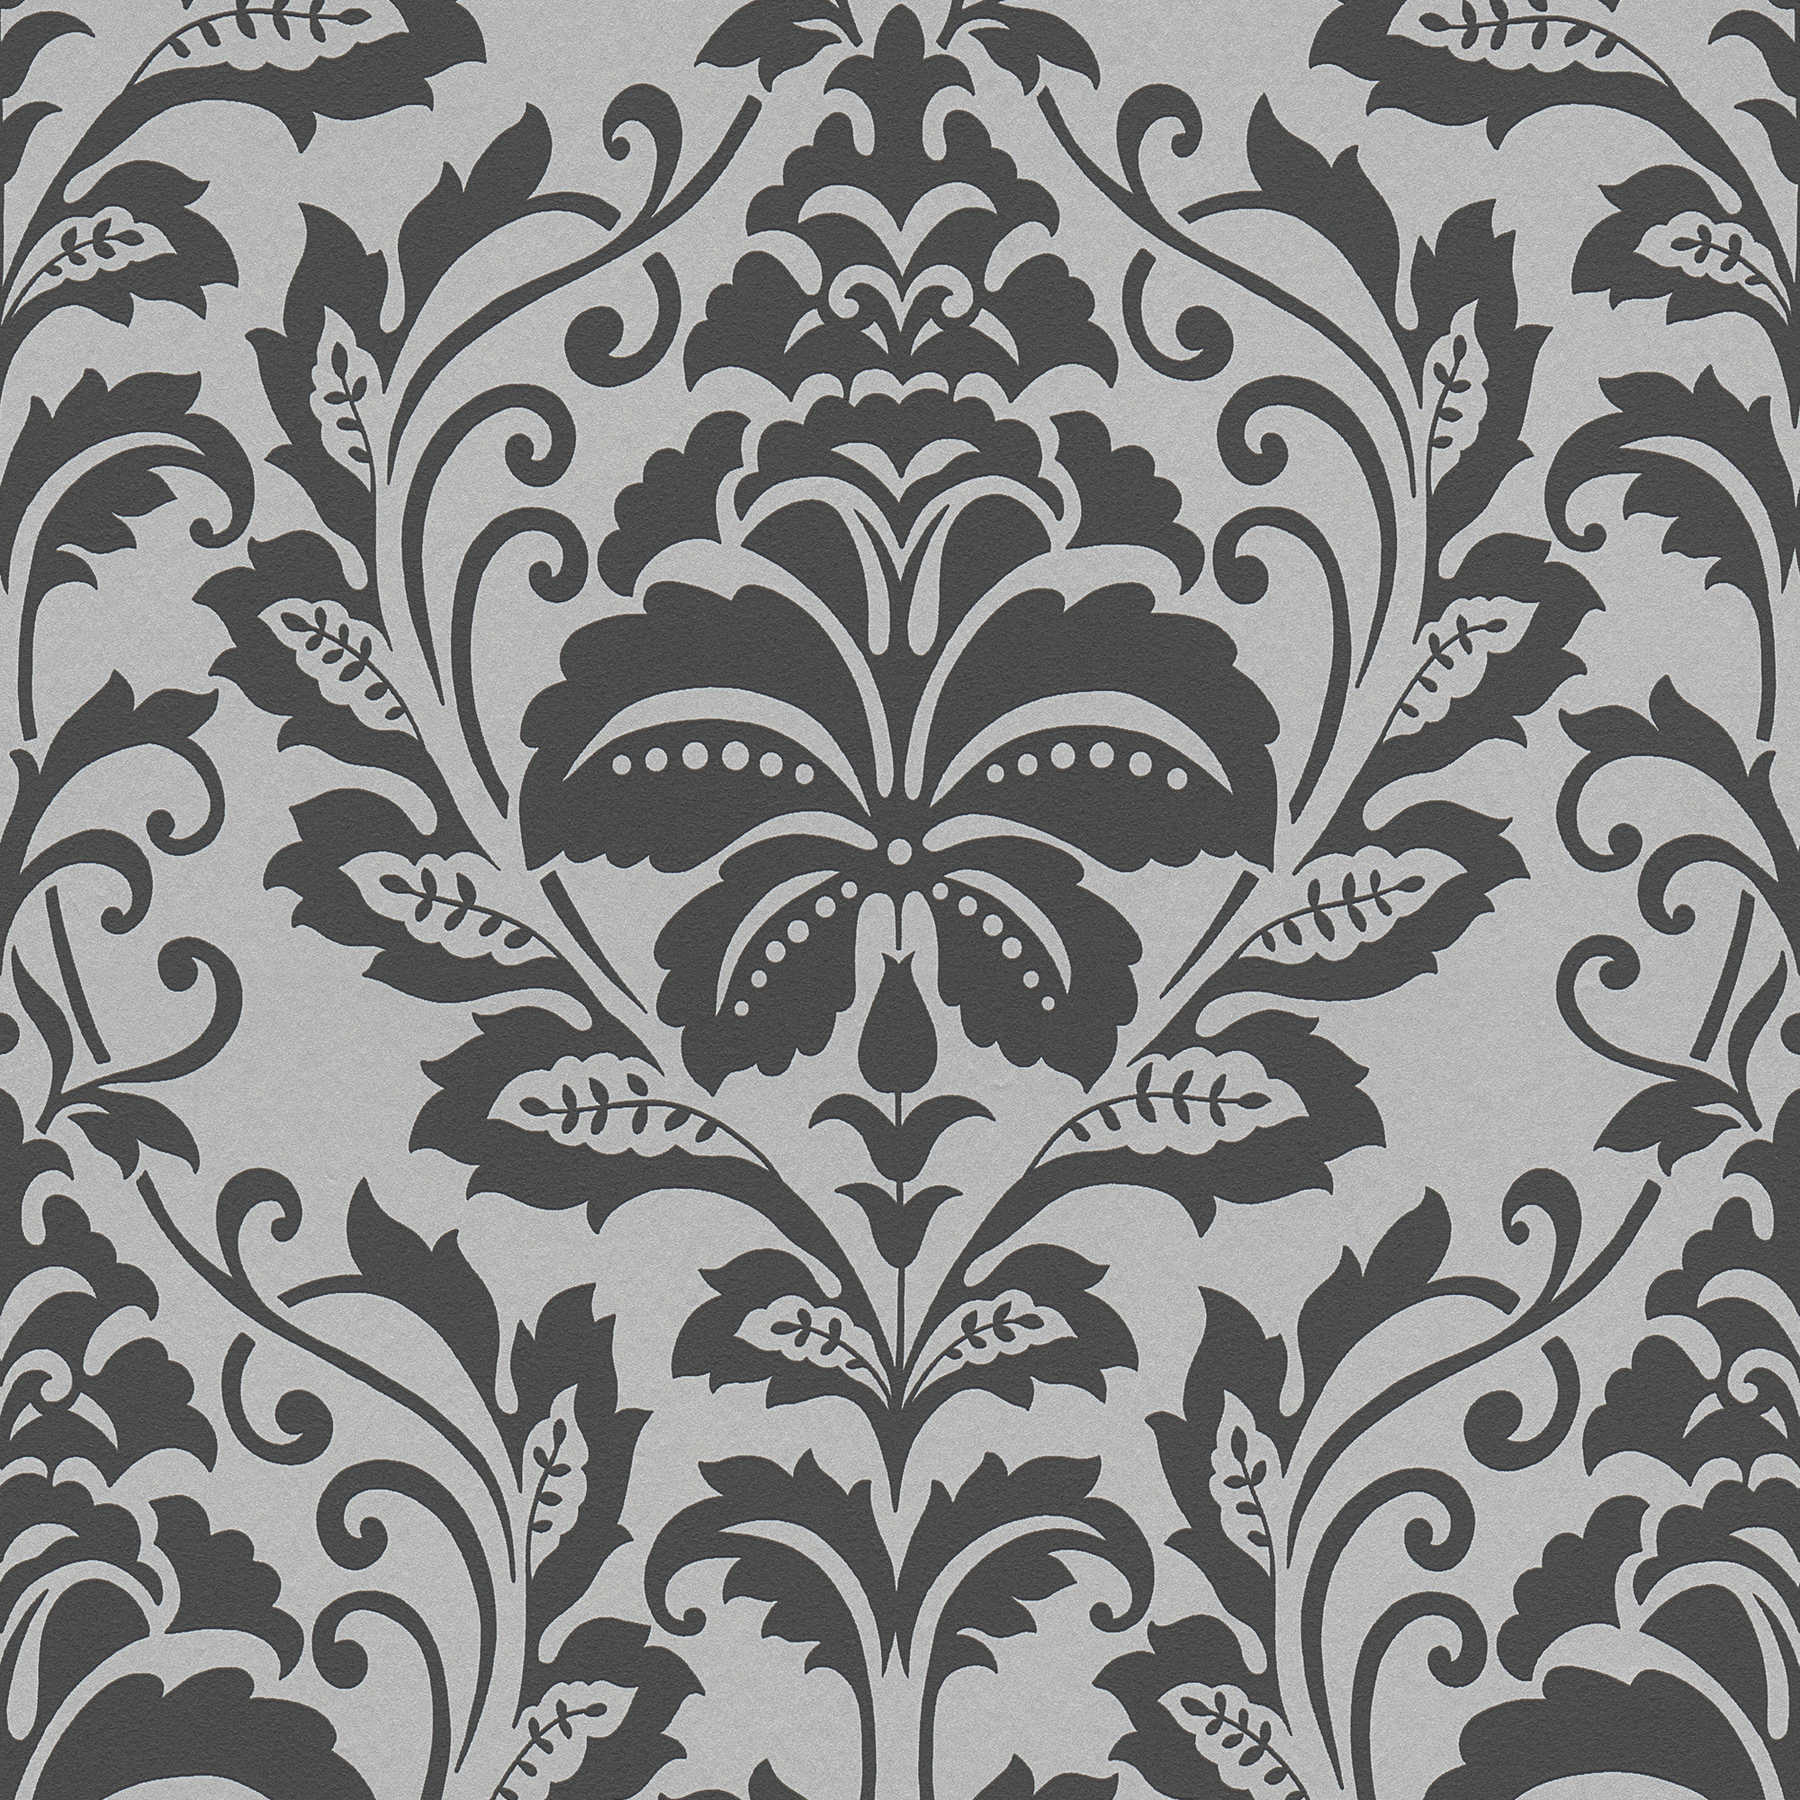 Neo classic ornament wallpaper, floral - grey, black
